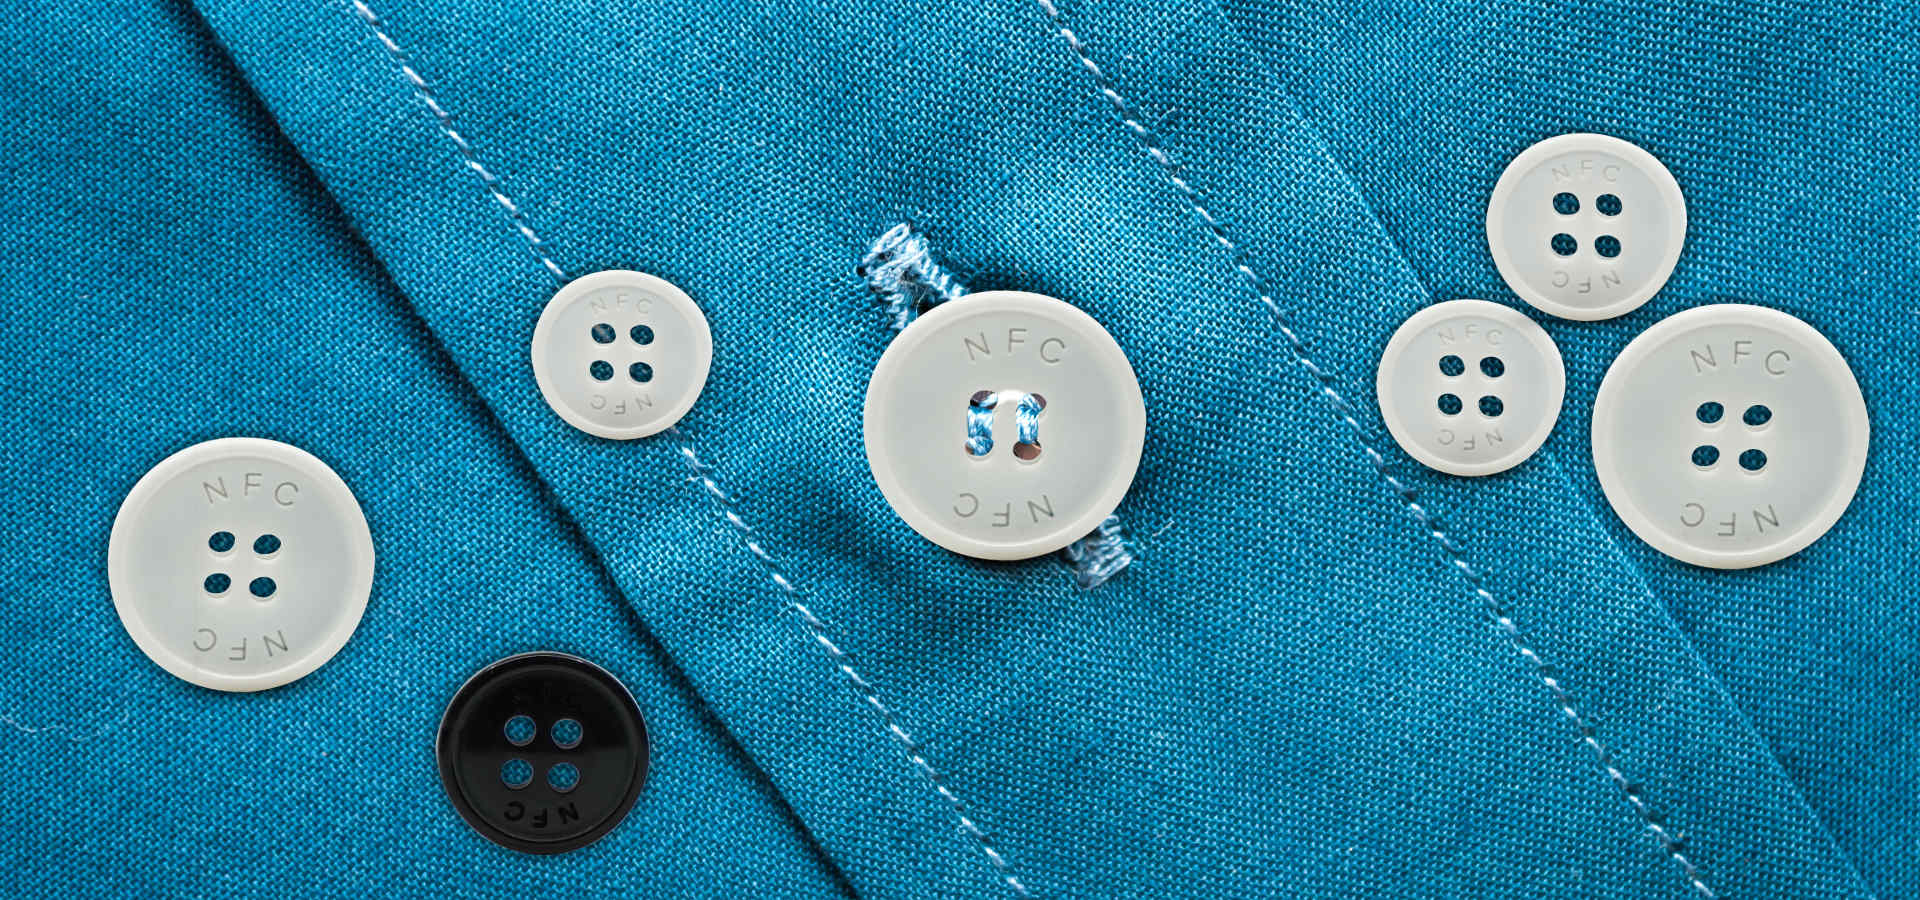 NFC buttons sewn on blue shirt